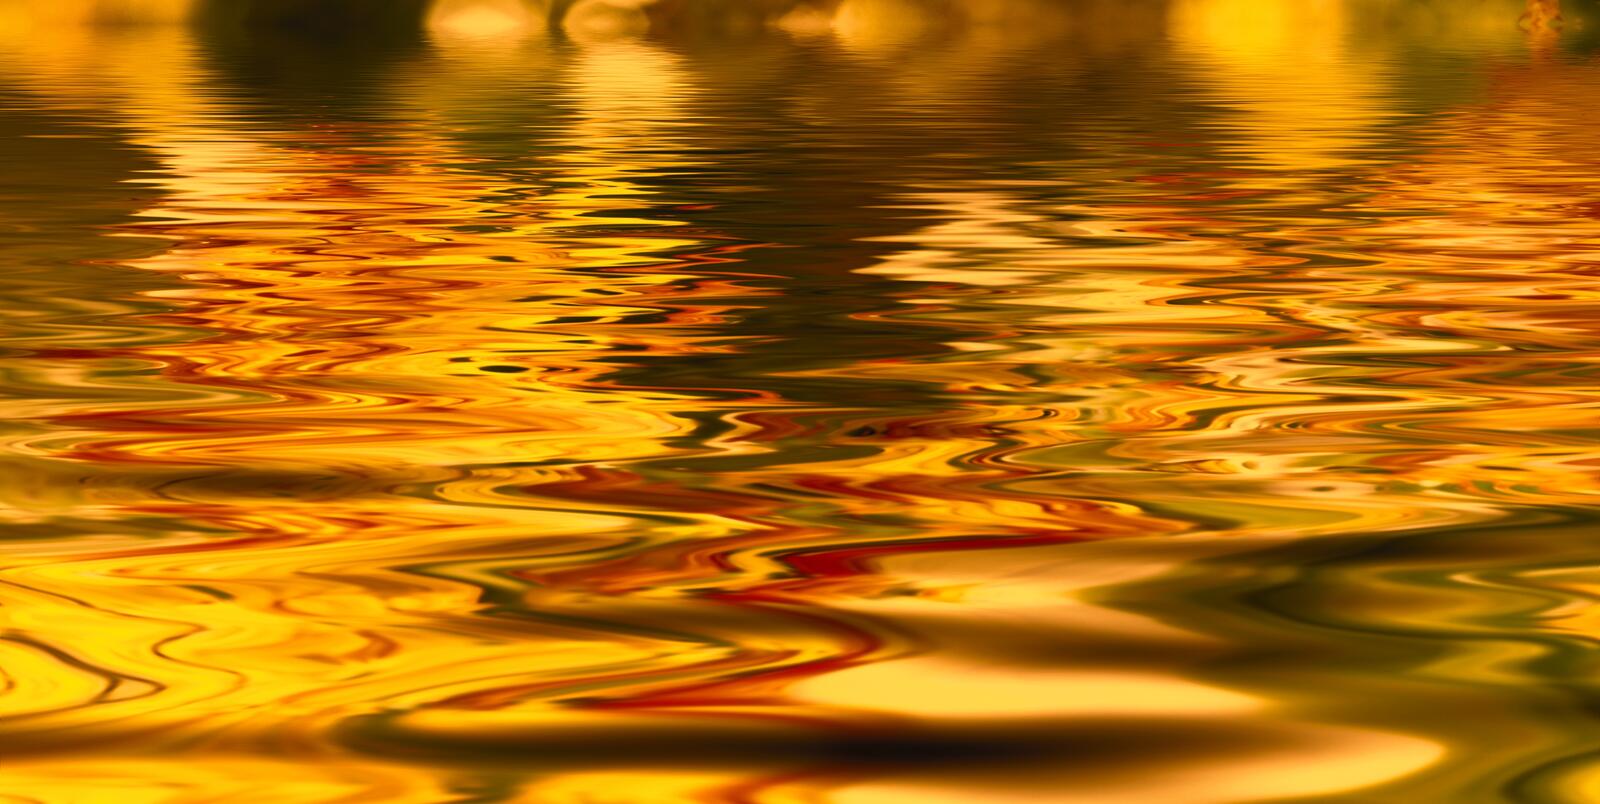 Бесплатное фото Вечерняя поверхность воды переливается оранжевым цветом